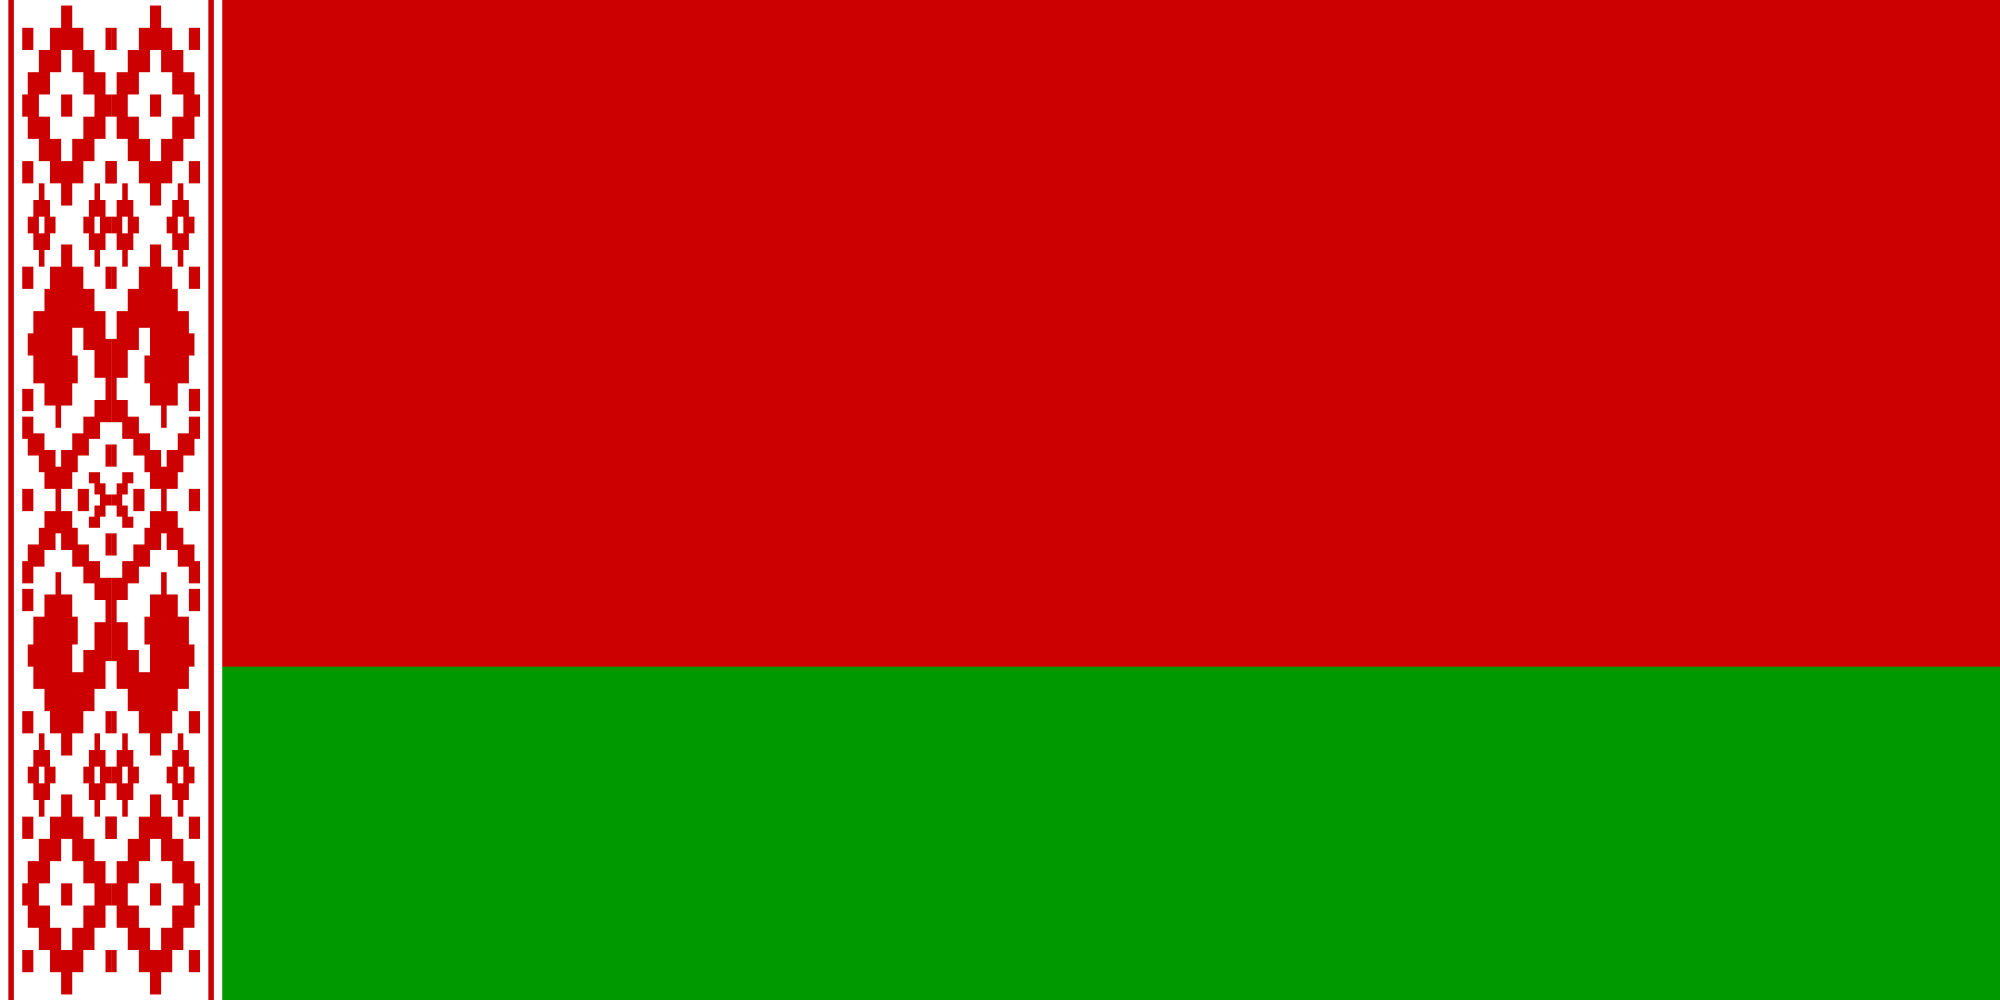 Belarus | Prepaid Data SIM Card Wiki | FANDOM powered by Wikia2000 x 1000